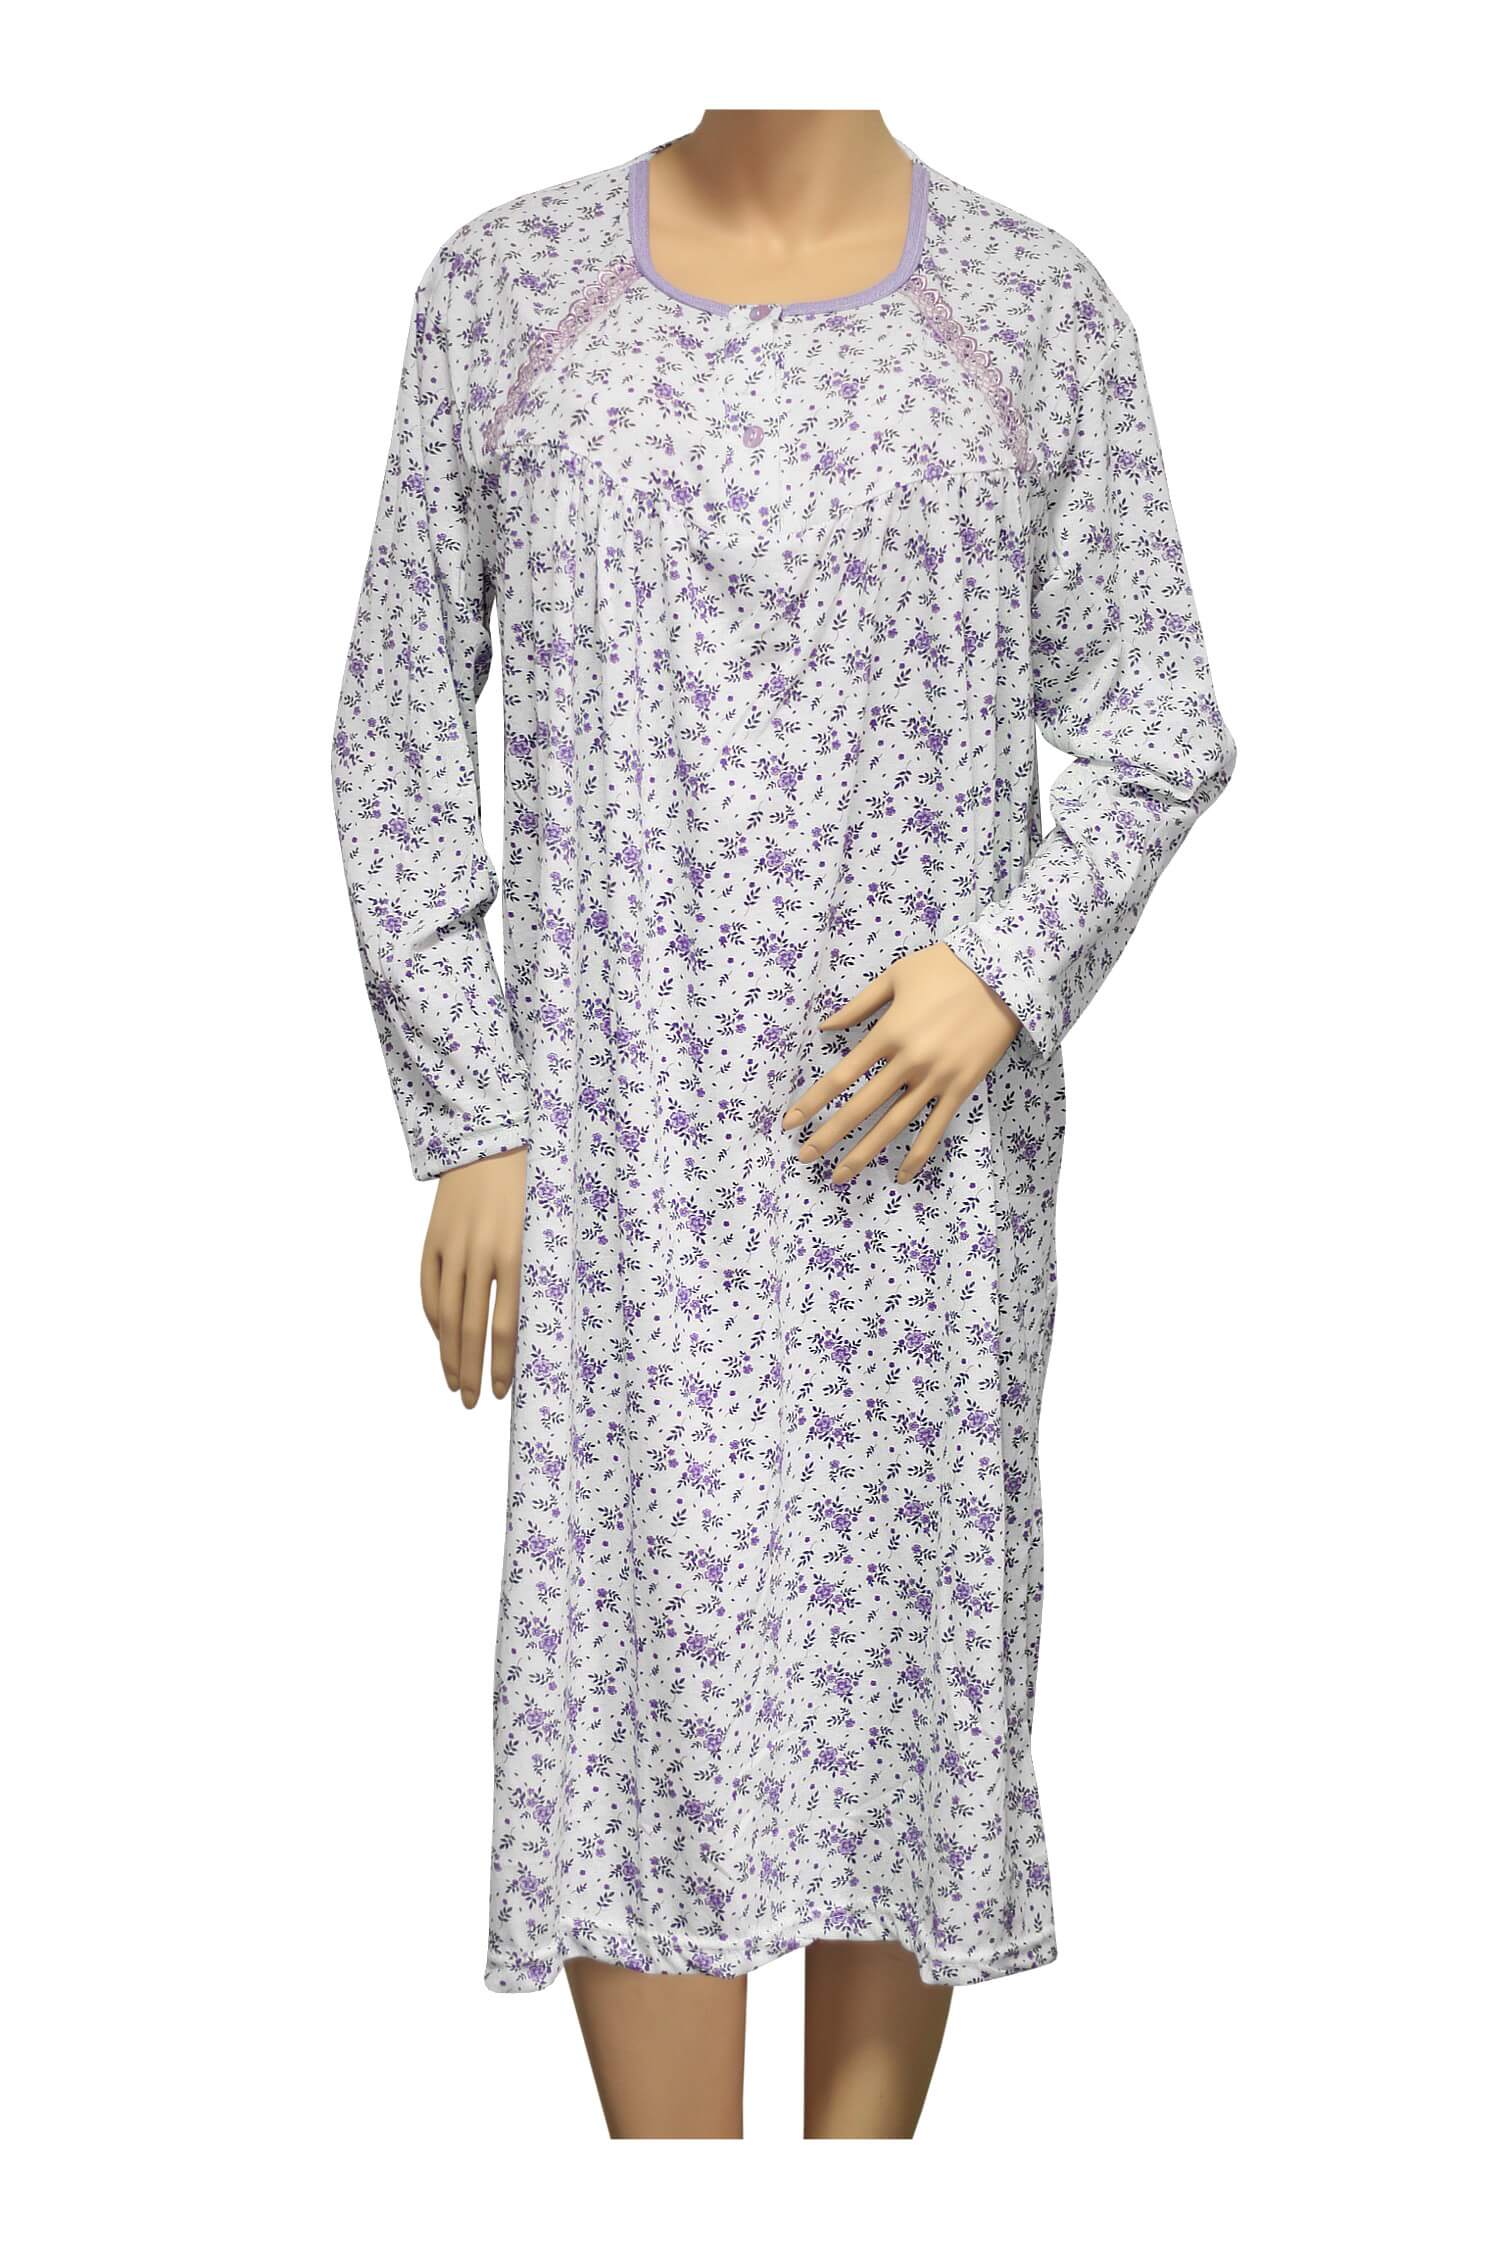 Karina dámská noční košile 1008 XXL fialová